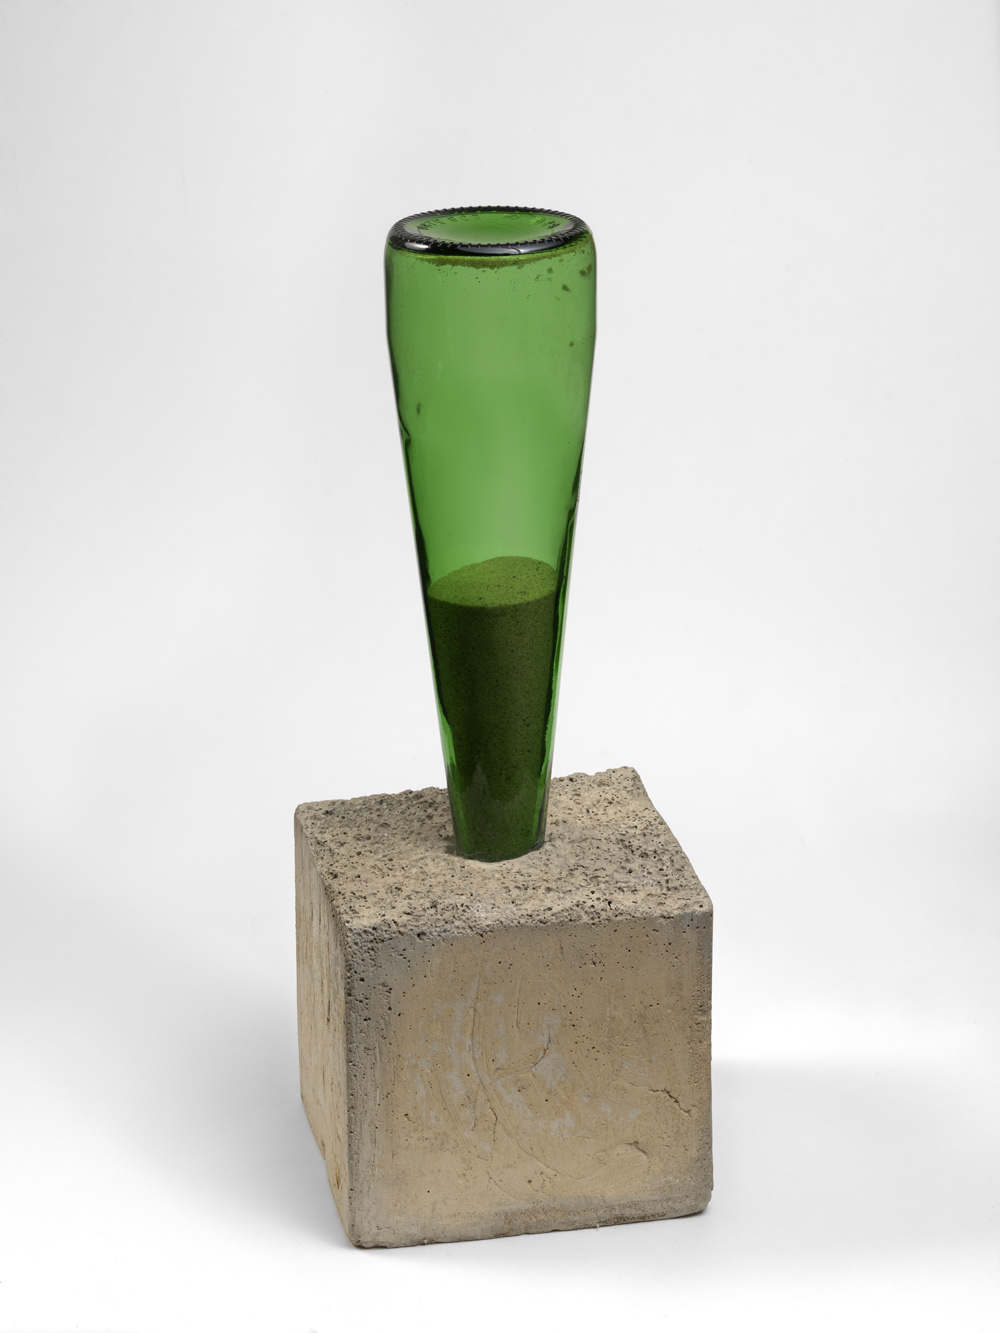  Alexandre da Cunha,&nbsp; 1736070909 ,&nbsp;2009,&nbsp;Concrete, sand and bottle,&nbsp;37 x 13 cm,&nbsp;Courtesy the artist and Thomas Dane Gallery, London 